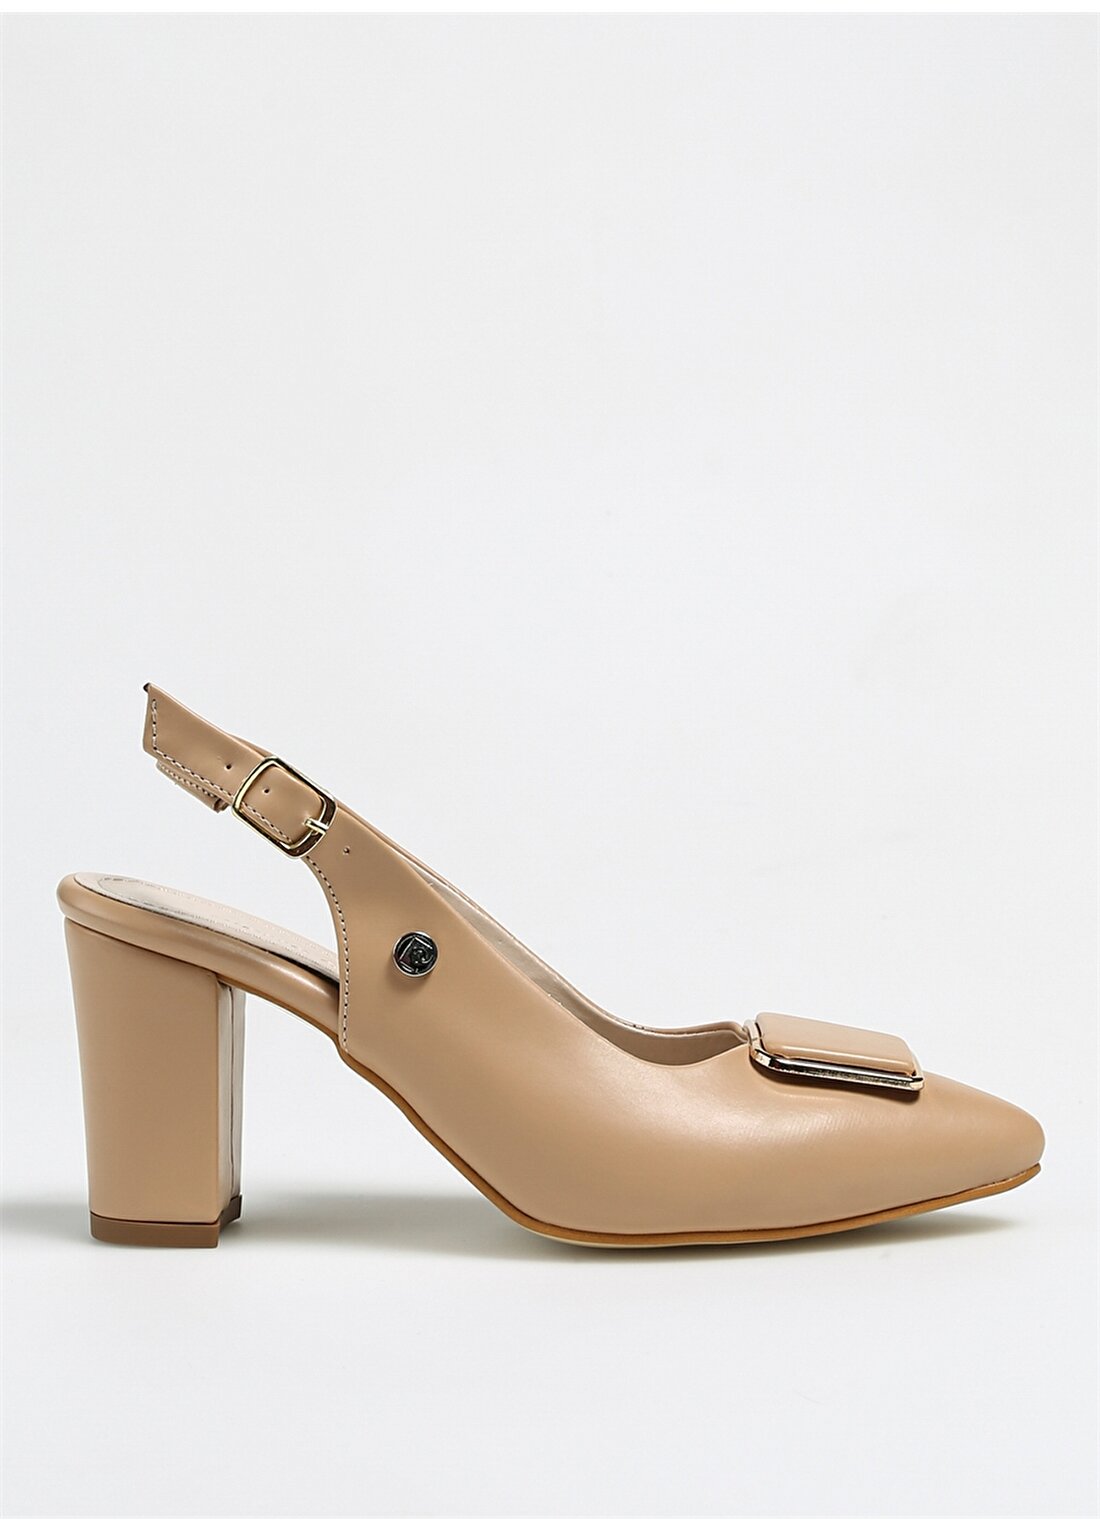 Pierre Cardin Bej Kadın Topuklu Ayakkabı PC-52279